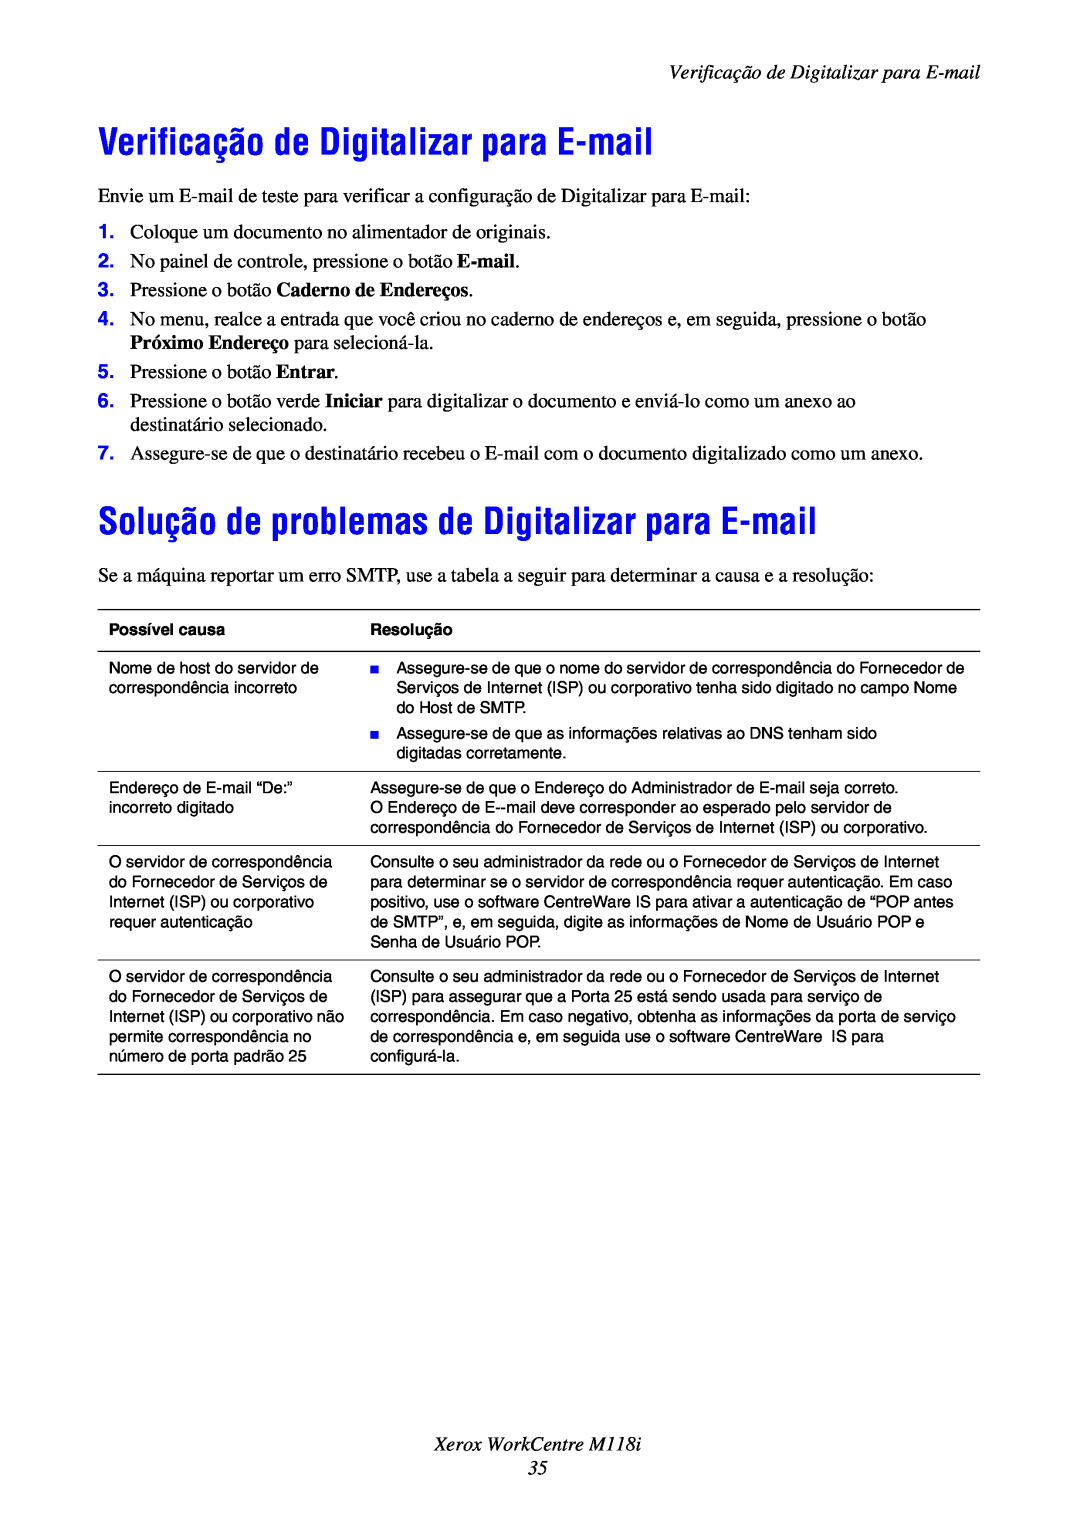 Xerox M118i manual Verificação de Digitalizar para E-mail, Solução de problemas de Digitalizar para E-mail 